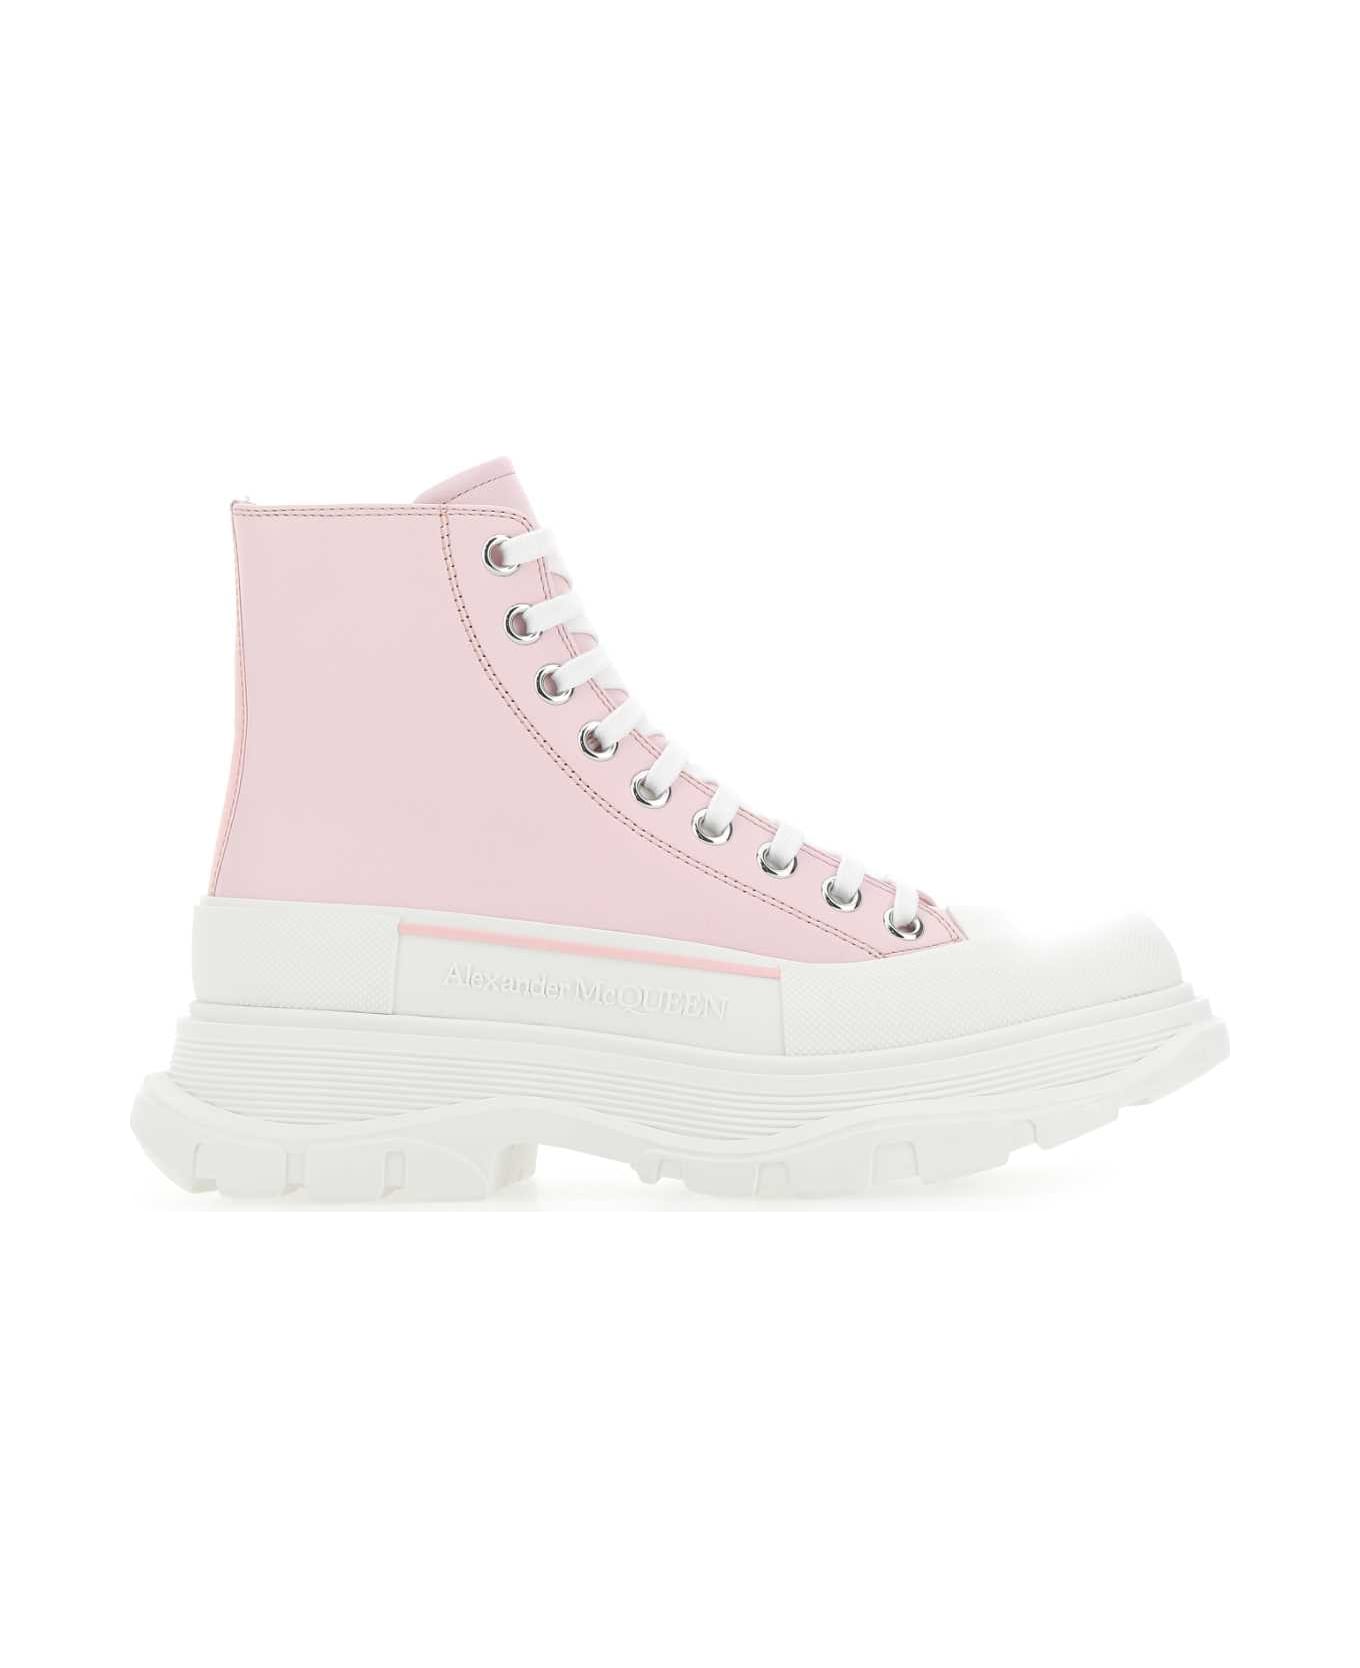 Alexander McQueen Pastel Pink Leather Tread Slick Sneakers - 5805